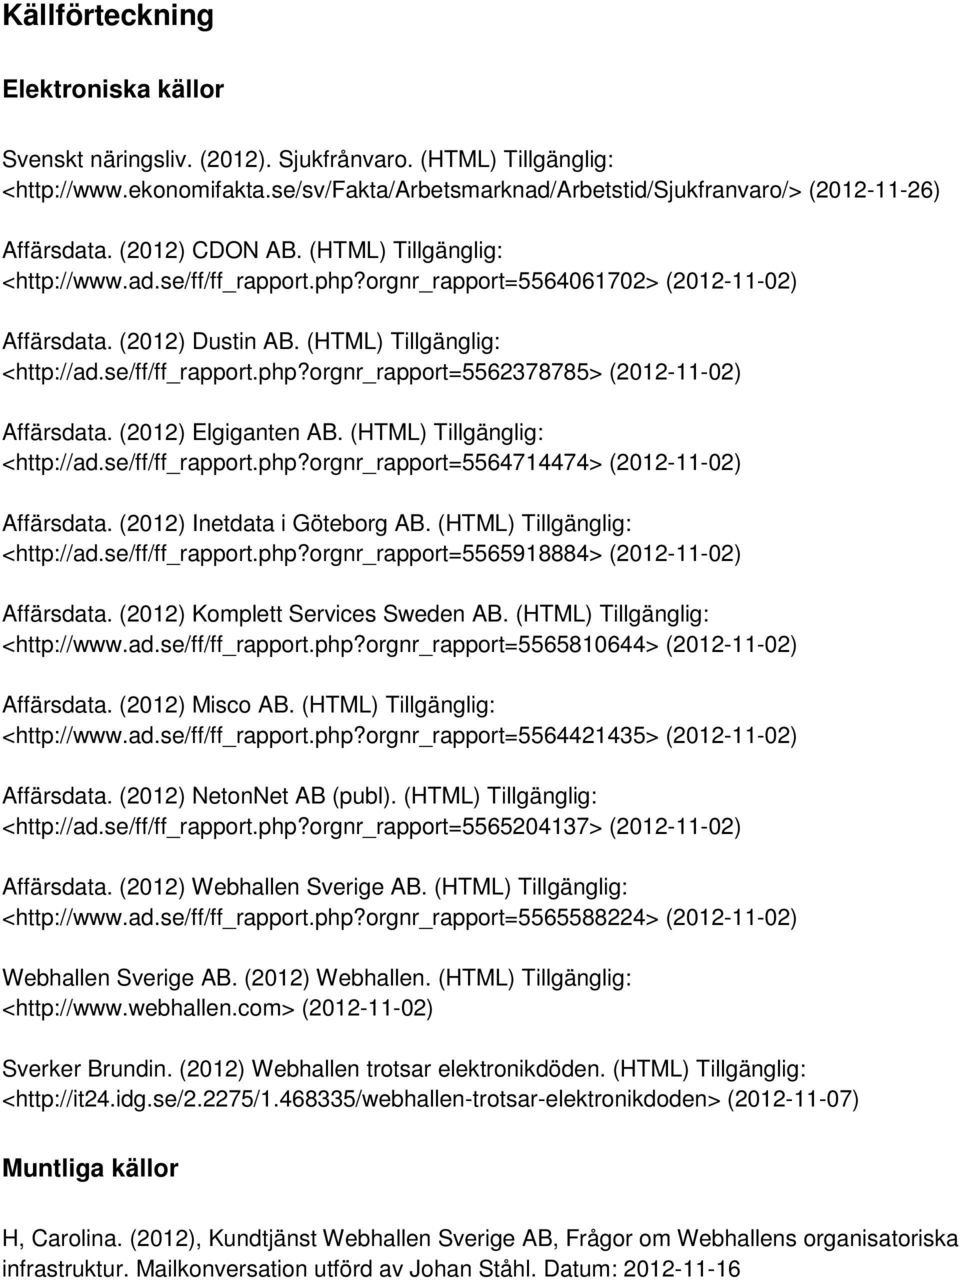 (2012) Elgiganten AB. (HTML) Tillgänglig: <http://ad.se/ff/ff_rapport.php?orgnr_rapport=5564714474> (2012-11-02) Affärsdata. (2012) Inetdata i Göteborg AB. (HTML) Tillgänglig: <http://ad.se/ff/ff_rapport.php?orgnr_rapport=5565918884> (2012-11-02) Affärsdata.